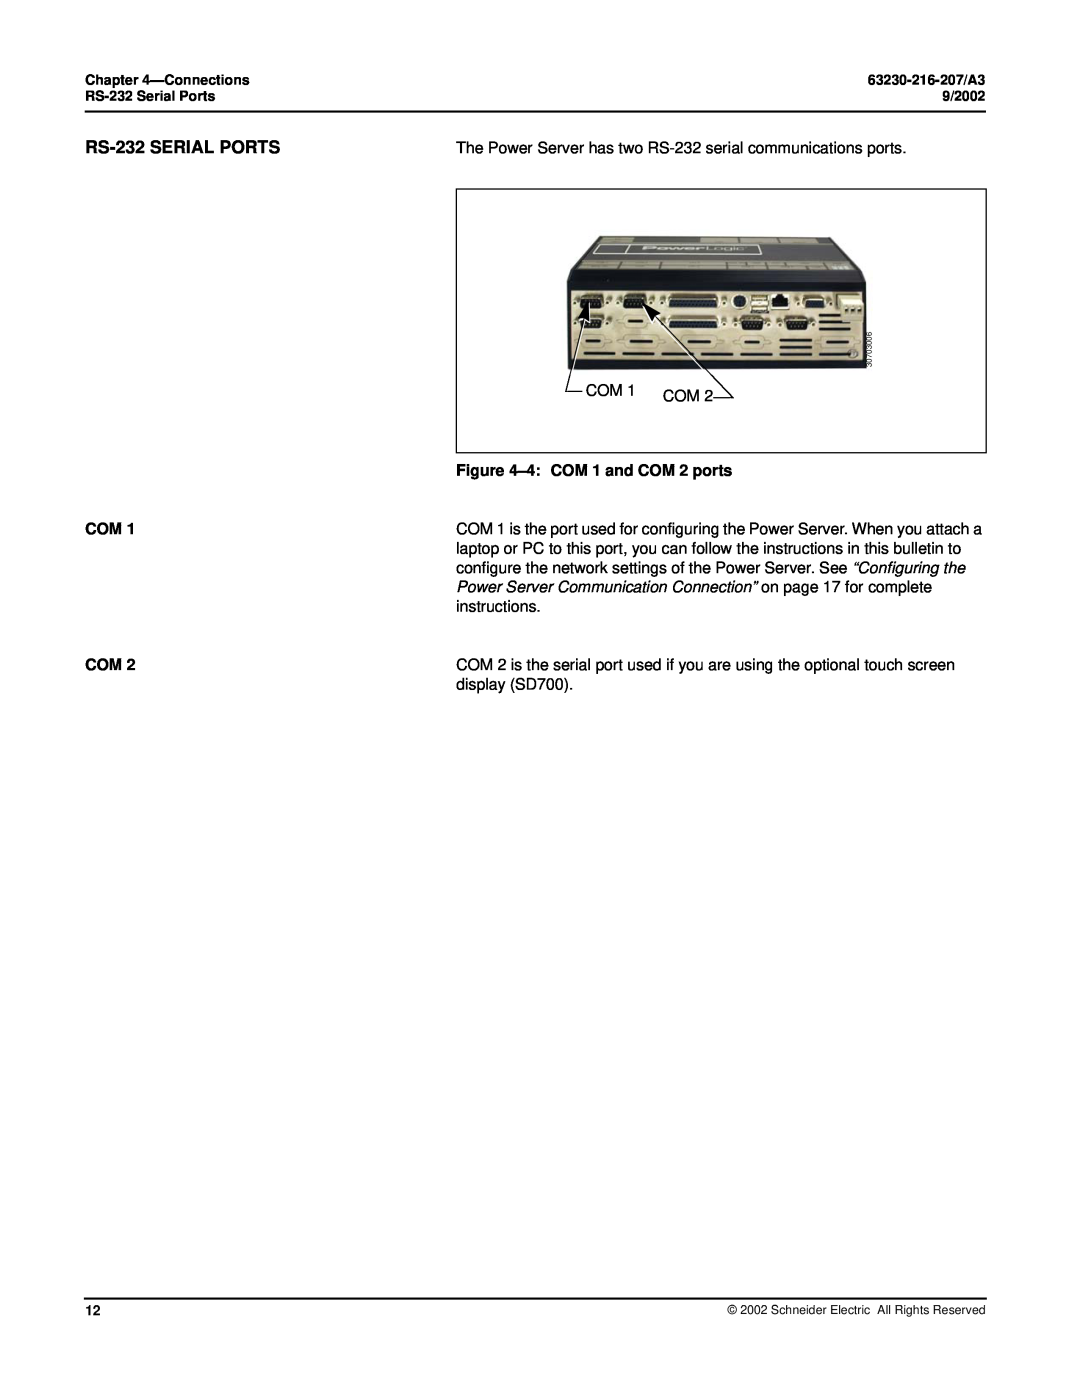 Schneider Electric PWRSRV710, PWRSRV750 setup guide RS-232 SERIAL PORTS, 4 COM 1 and COM 2 ports 